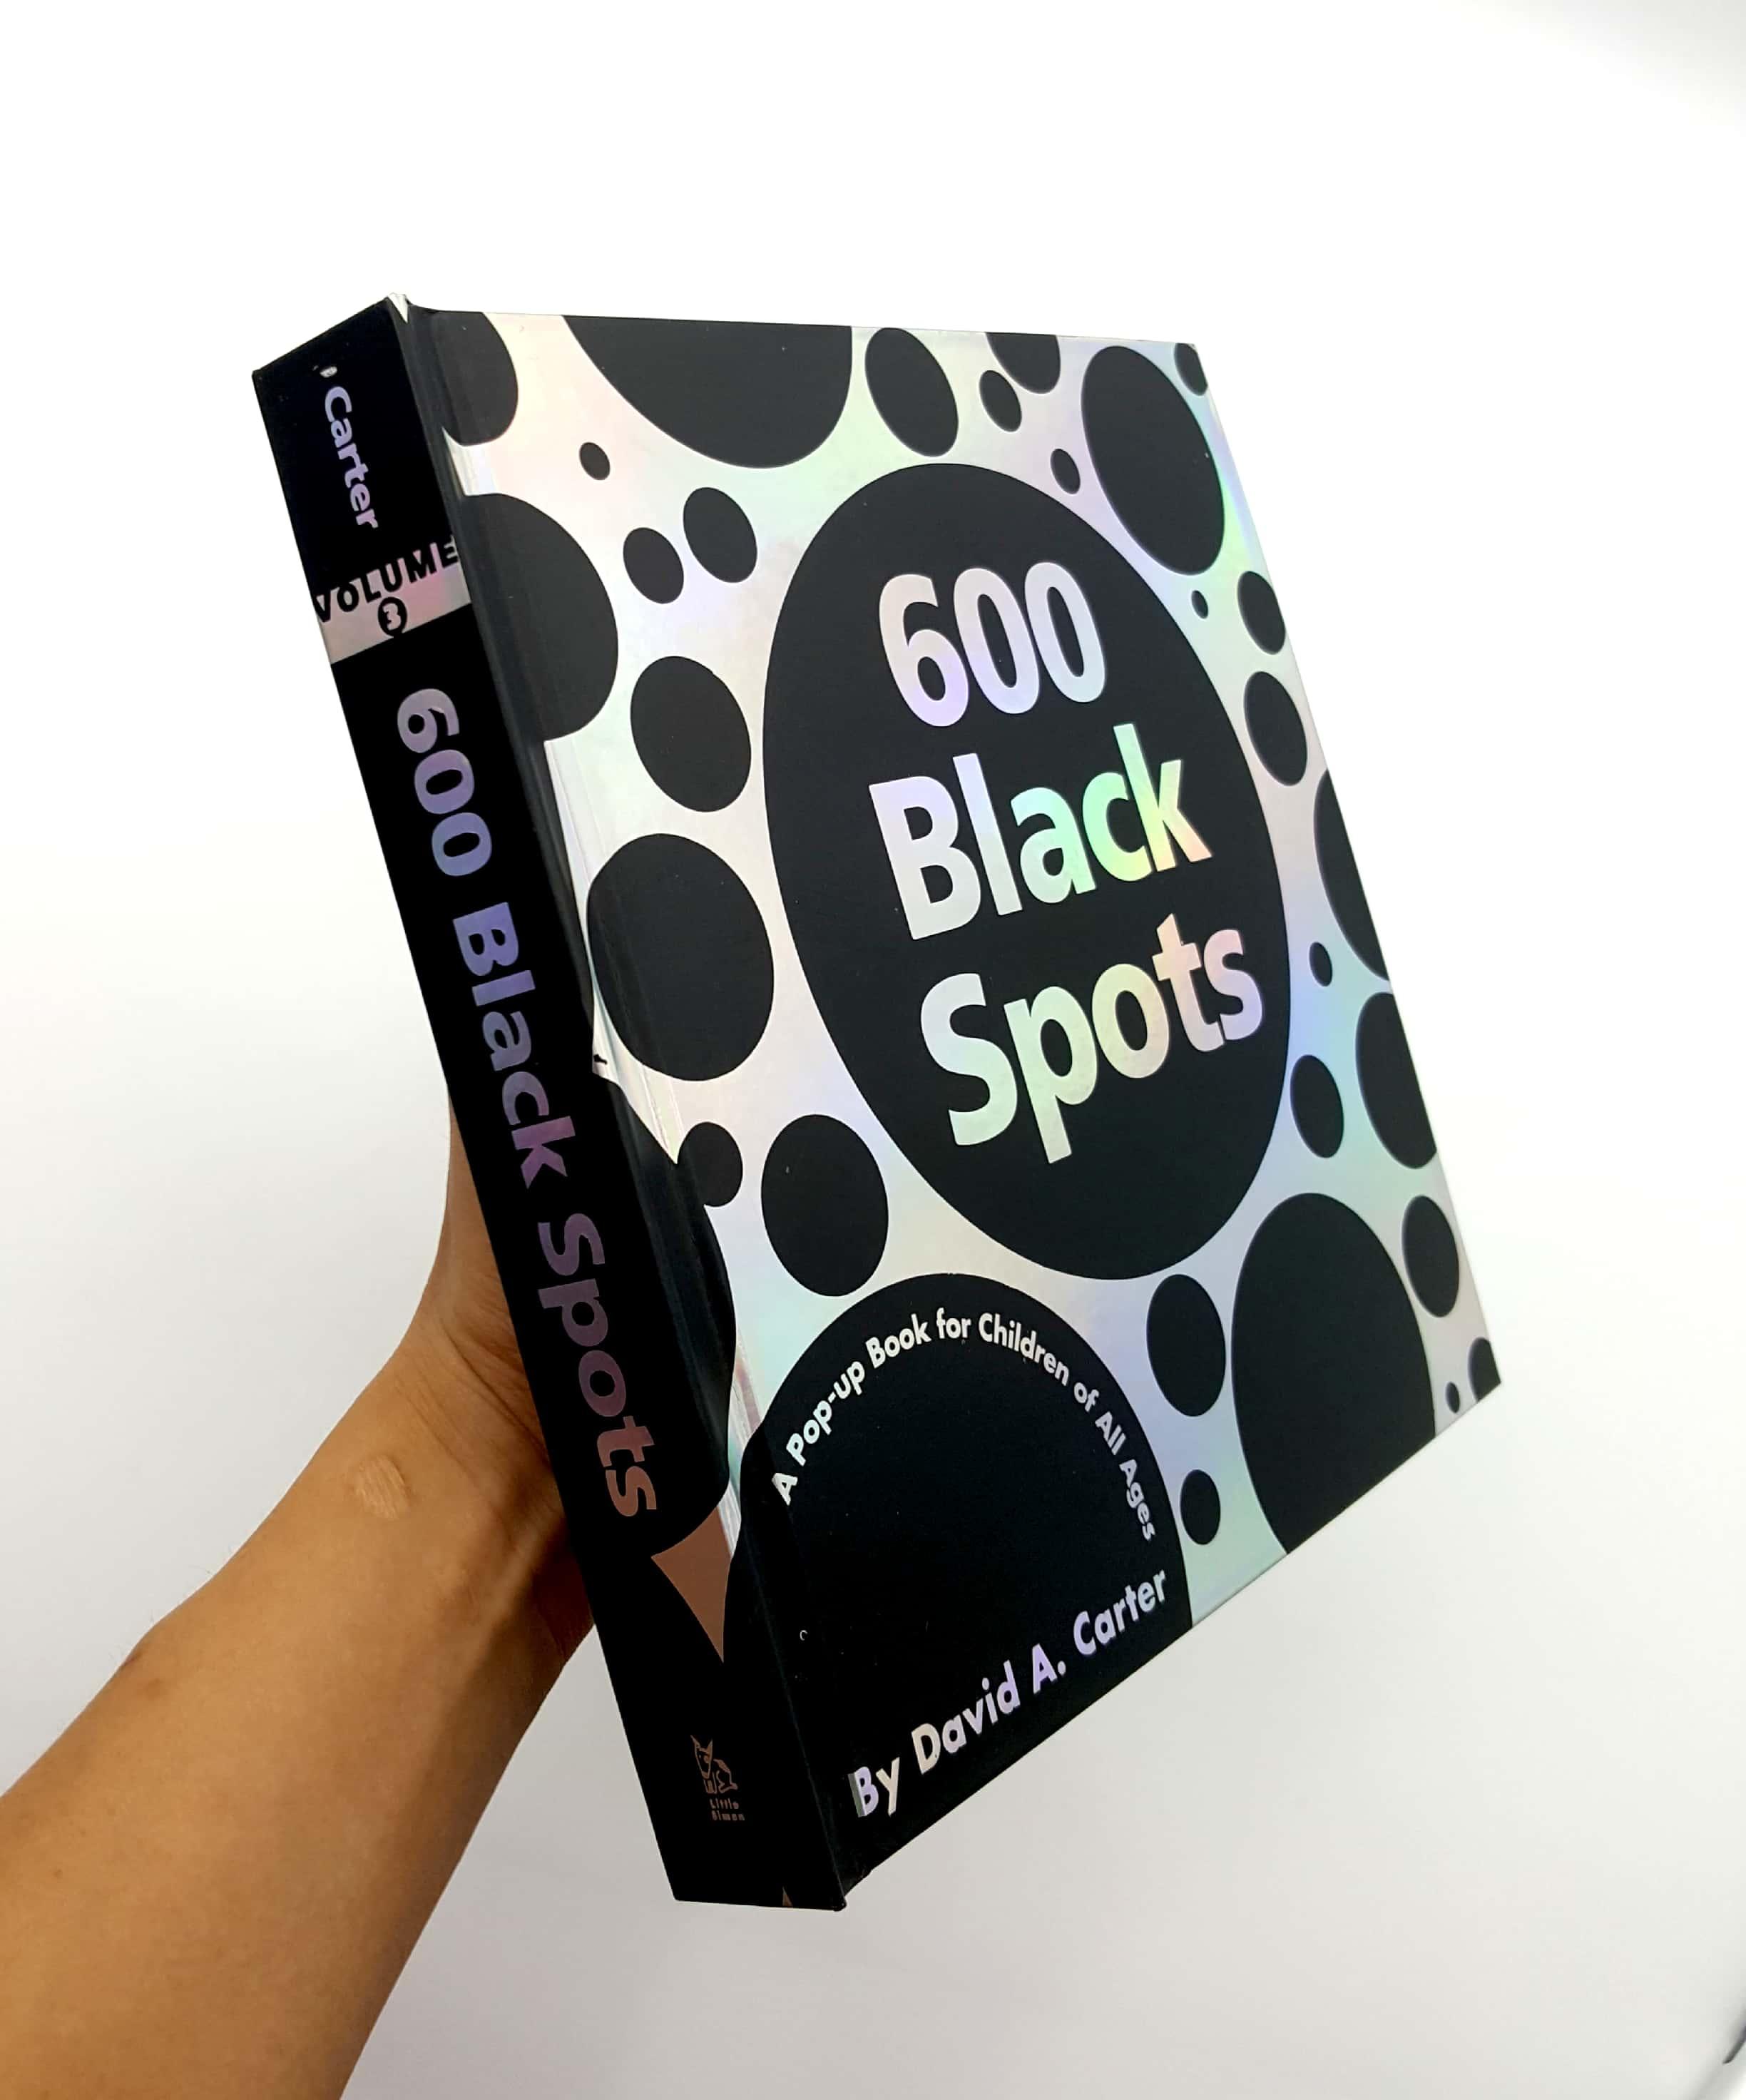 Hình ảnh 600 Black Spots